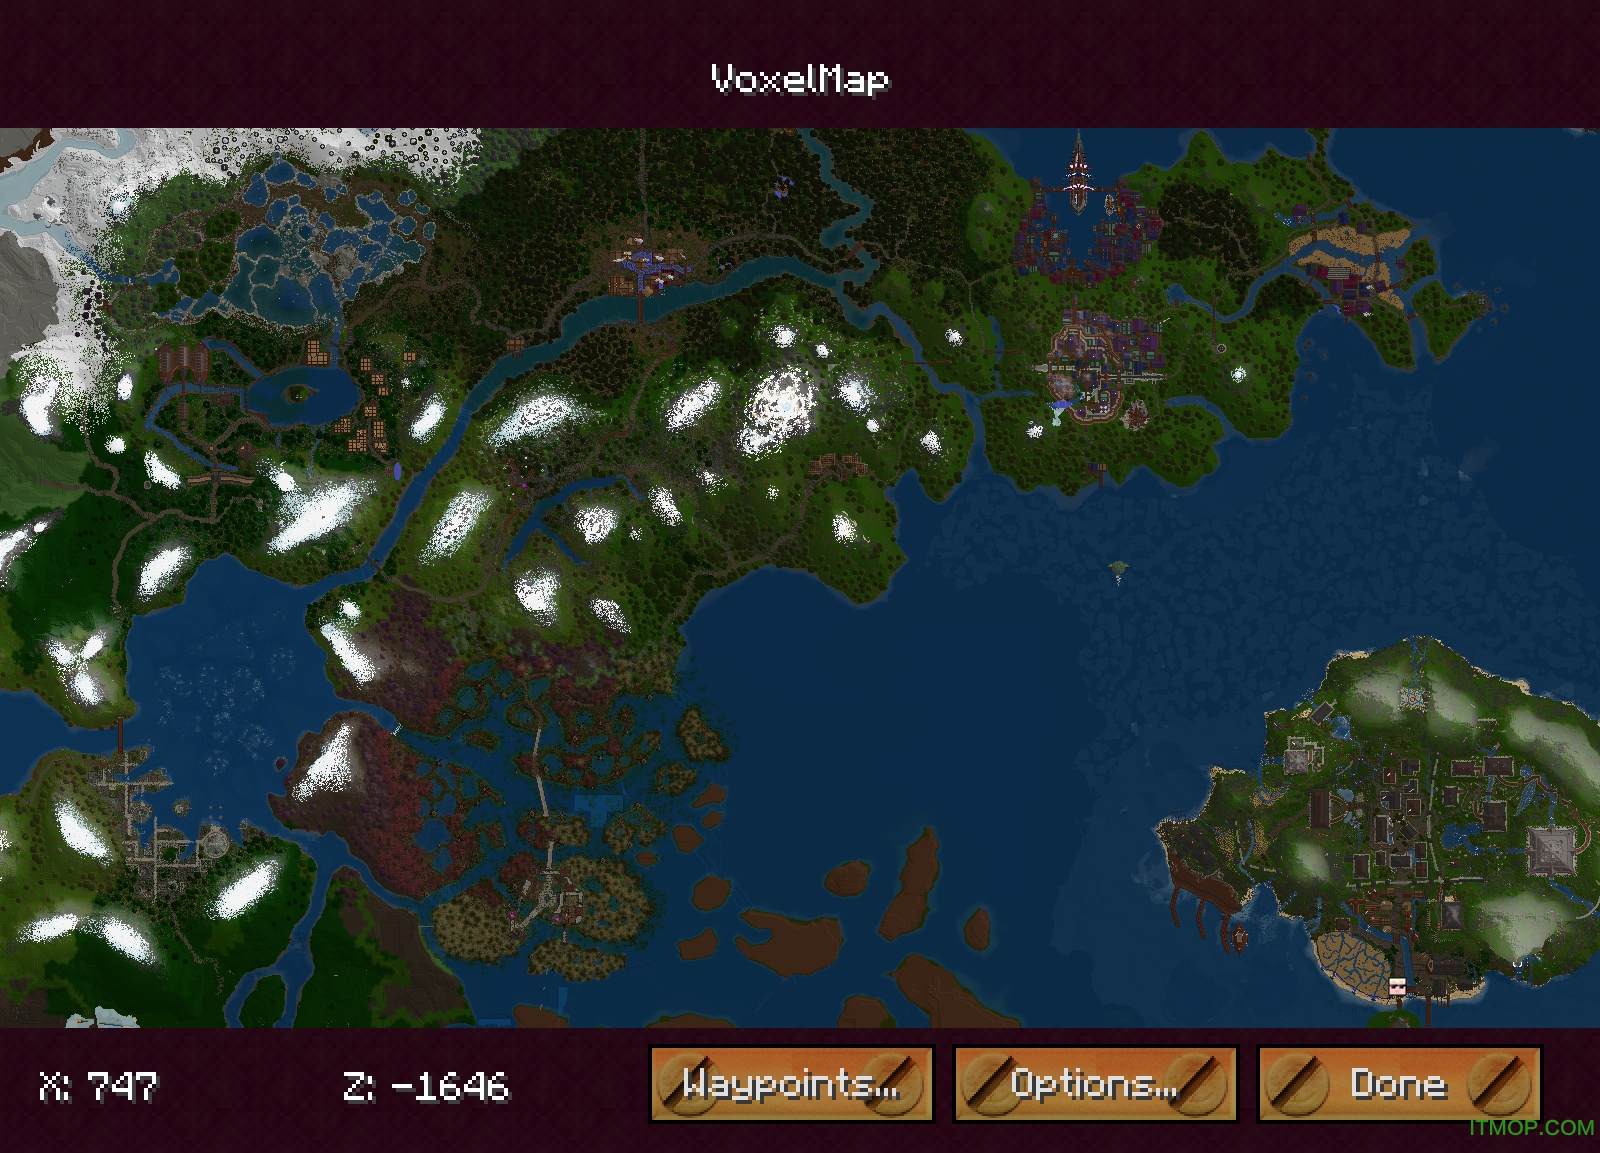 我的世界VoxelMap小地图mod大全 完整版